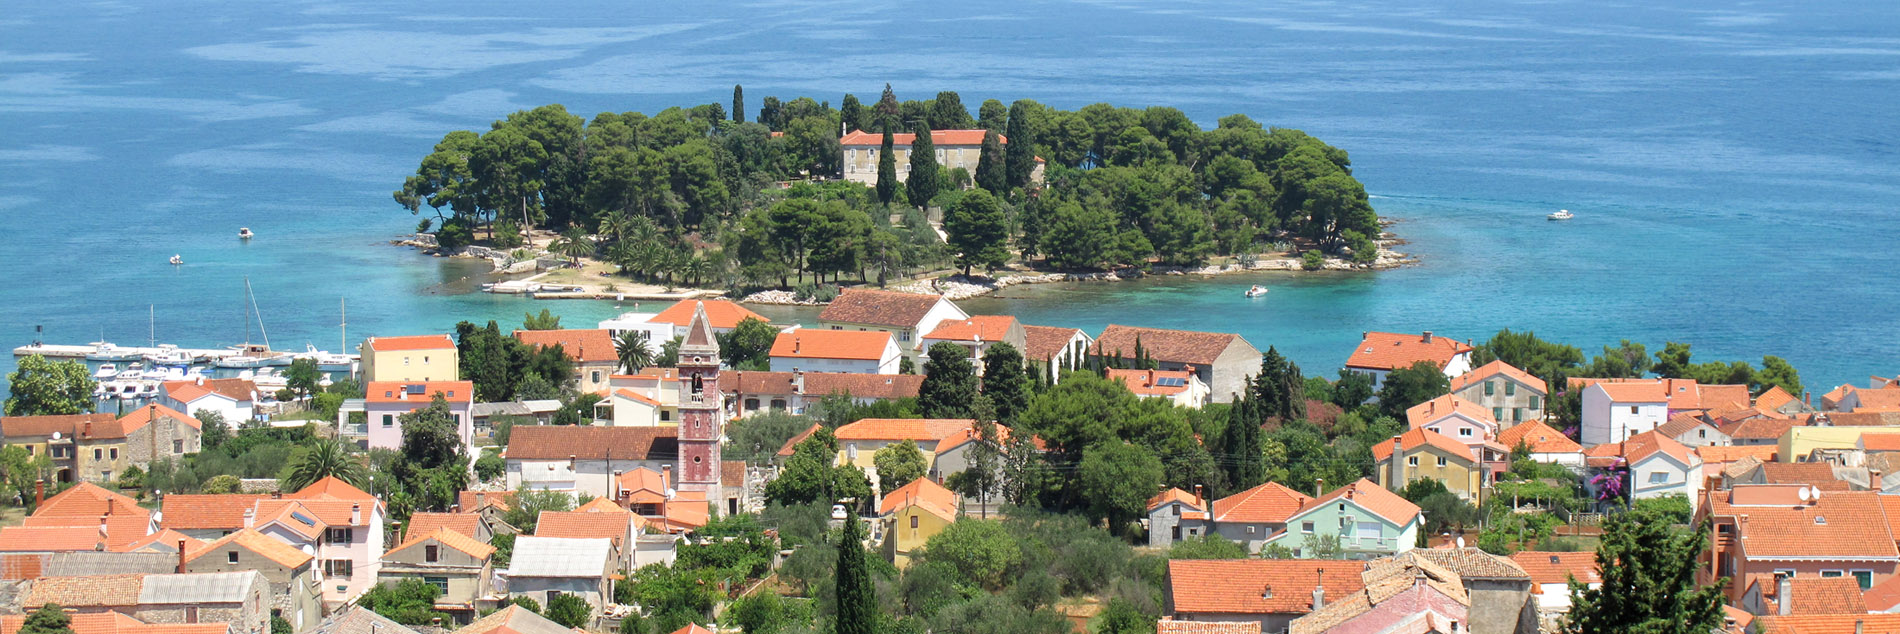 Preko - Zadar, Croatia